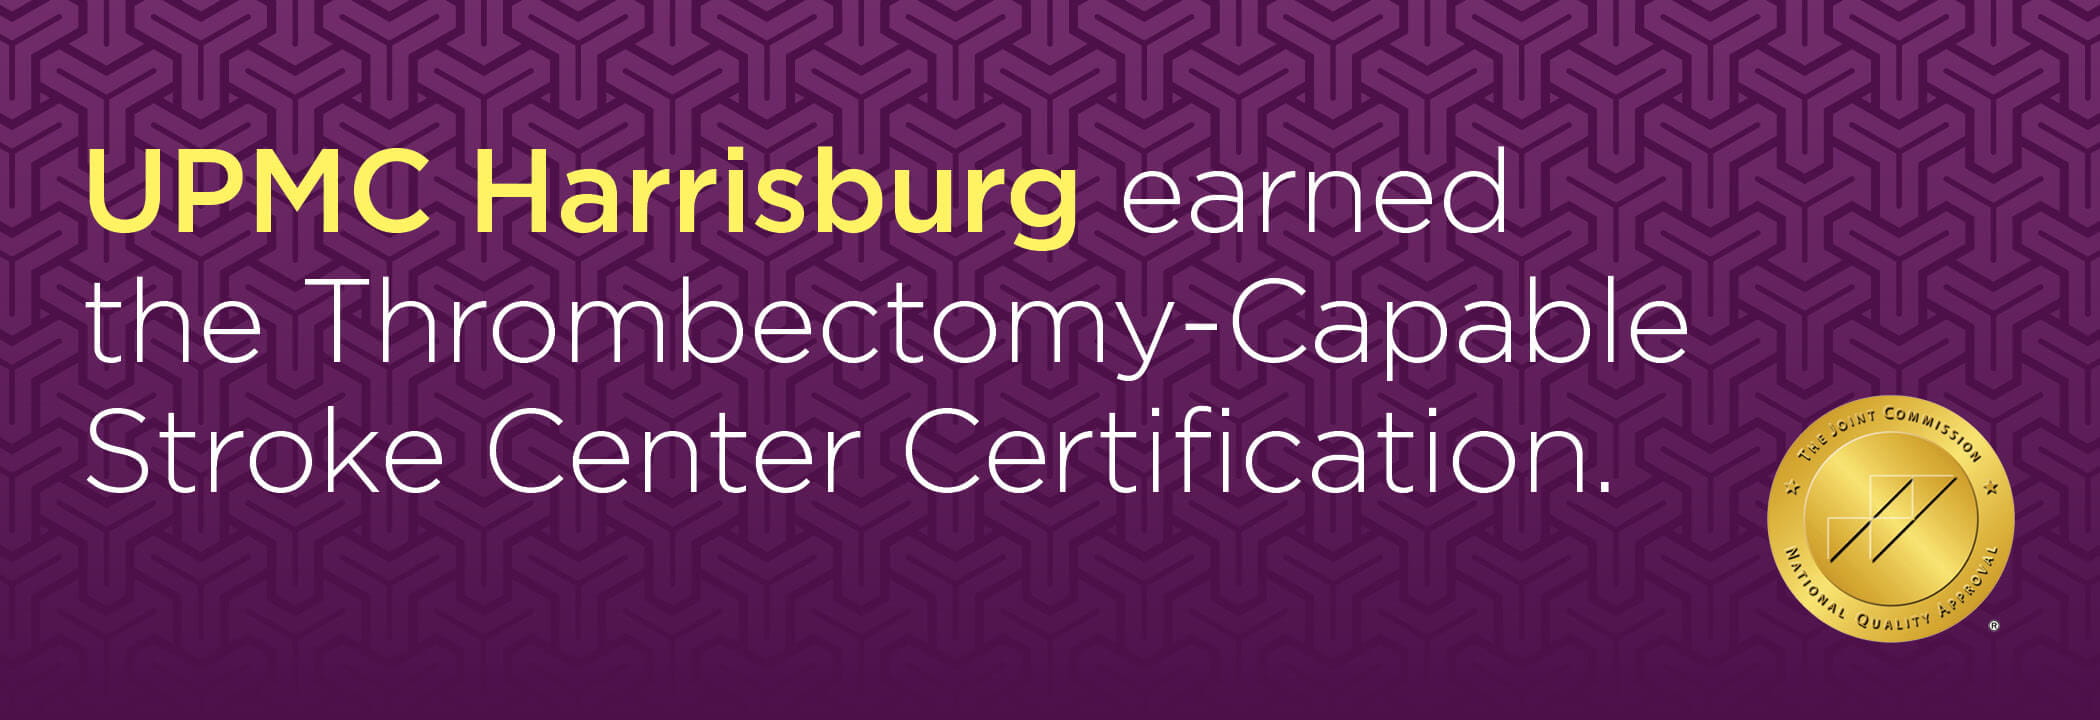 UPMC Harrisburg earned the Thrombectomy-Capable Stroke Center Certification.